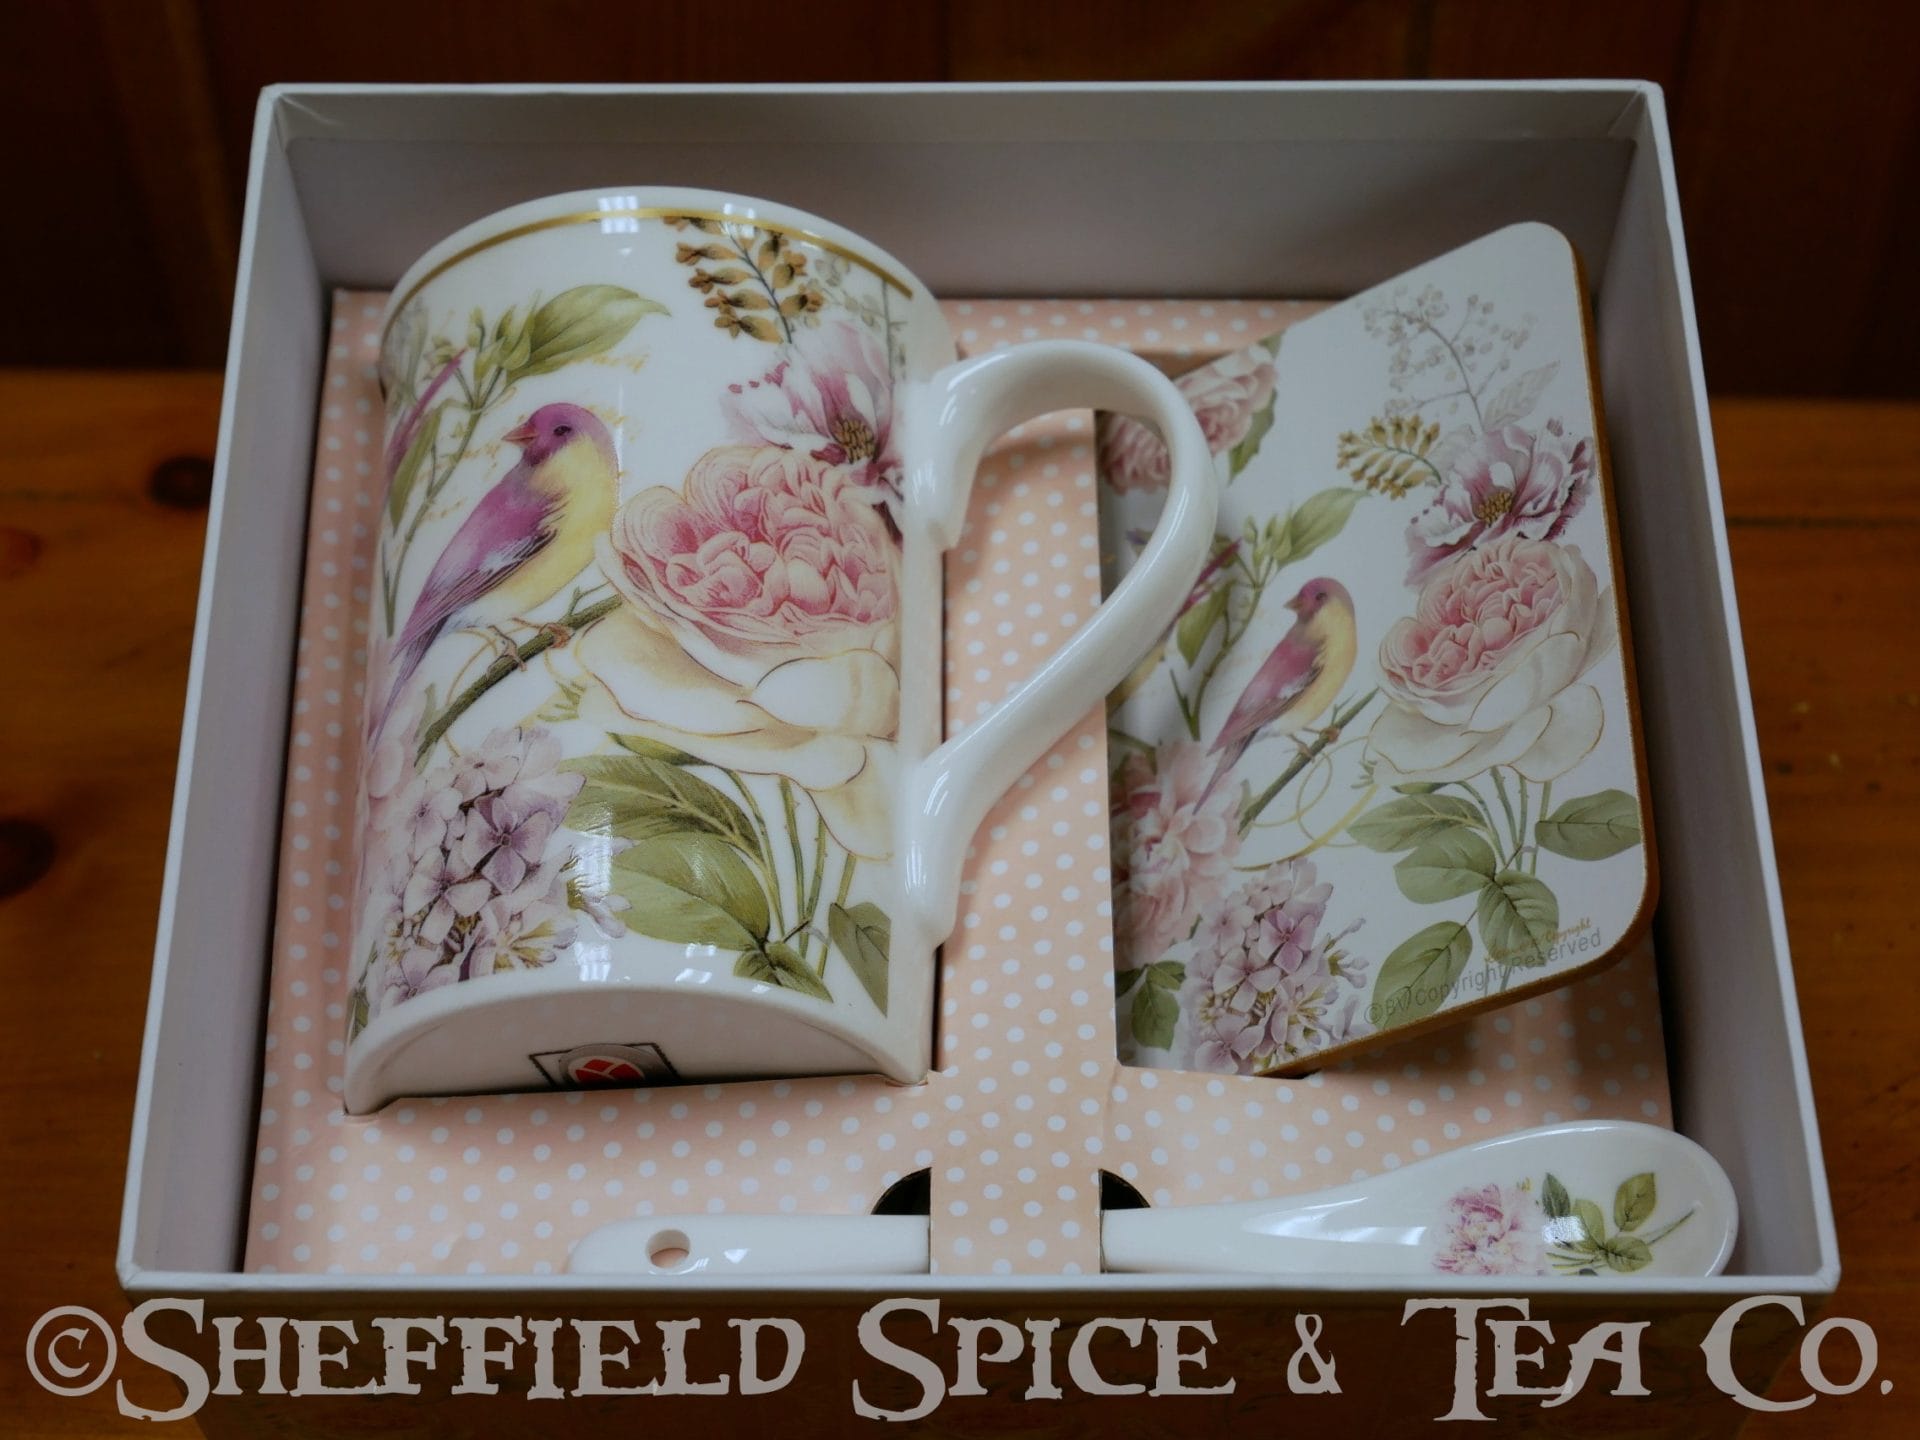 Half Cup 4 ounce Jar - Sheffield Spice & Tea Co